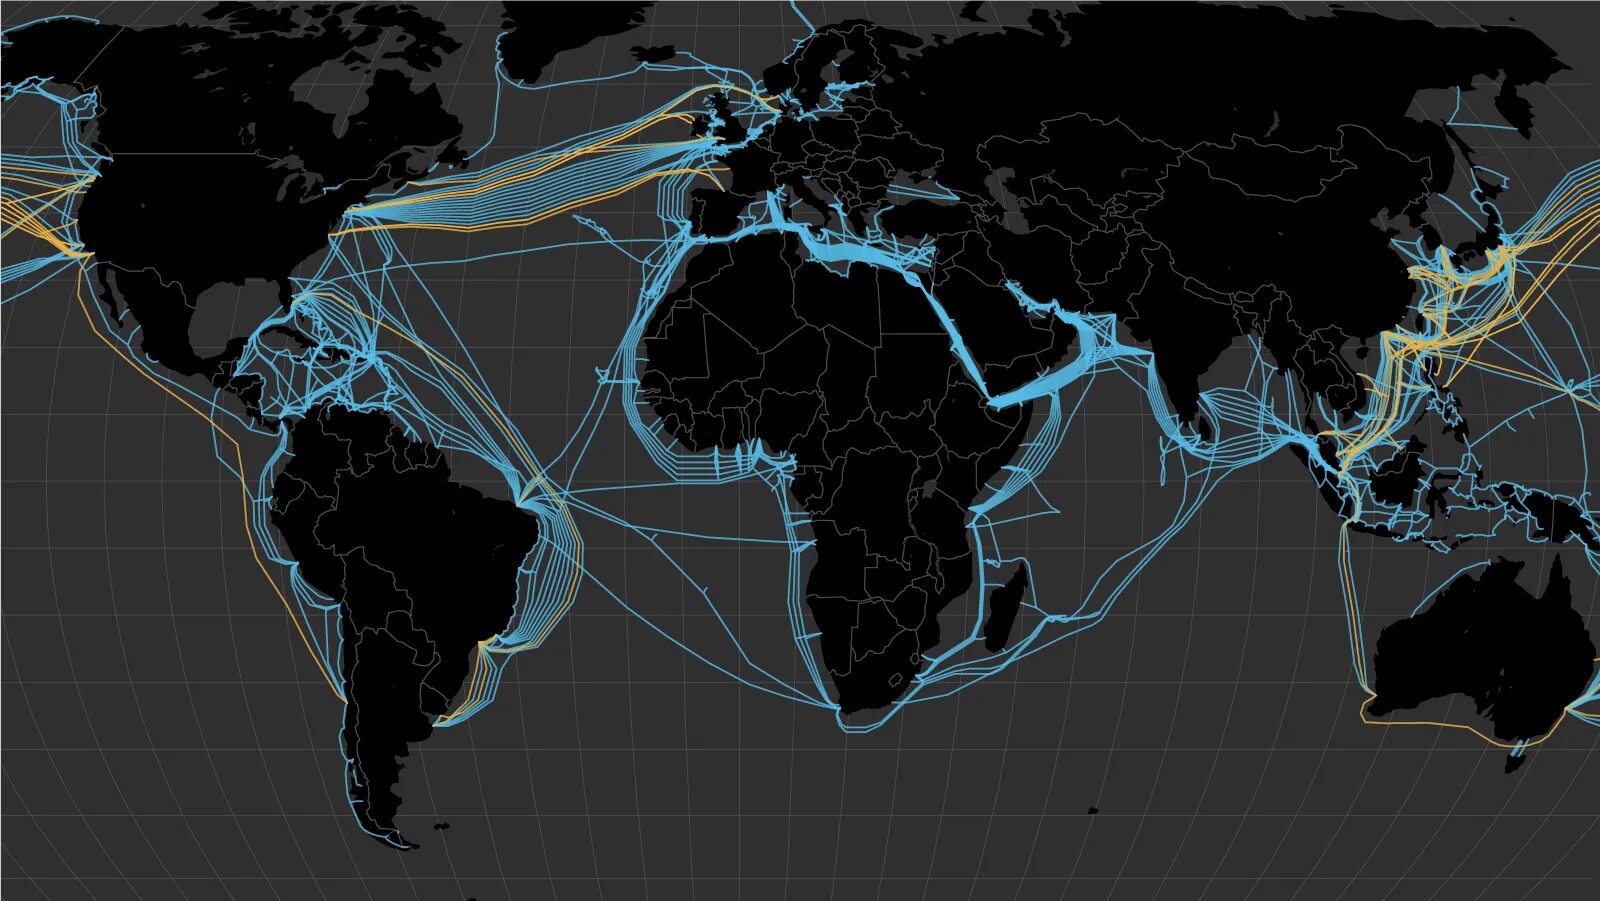 Кабели интернета в мире. Карта интернета. Кабельные сети интернета в мире. Карта подводных кабелей интернета в мире. Мировая сеть интернет карта.